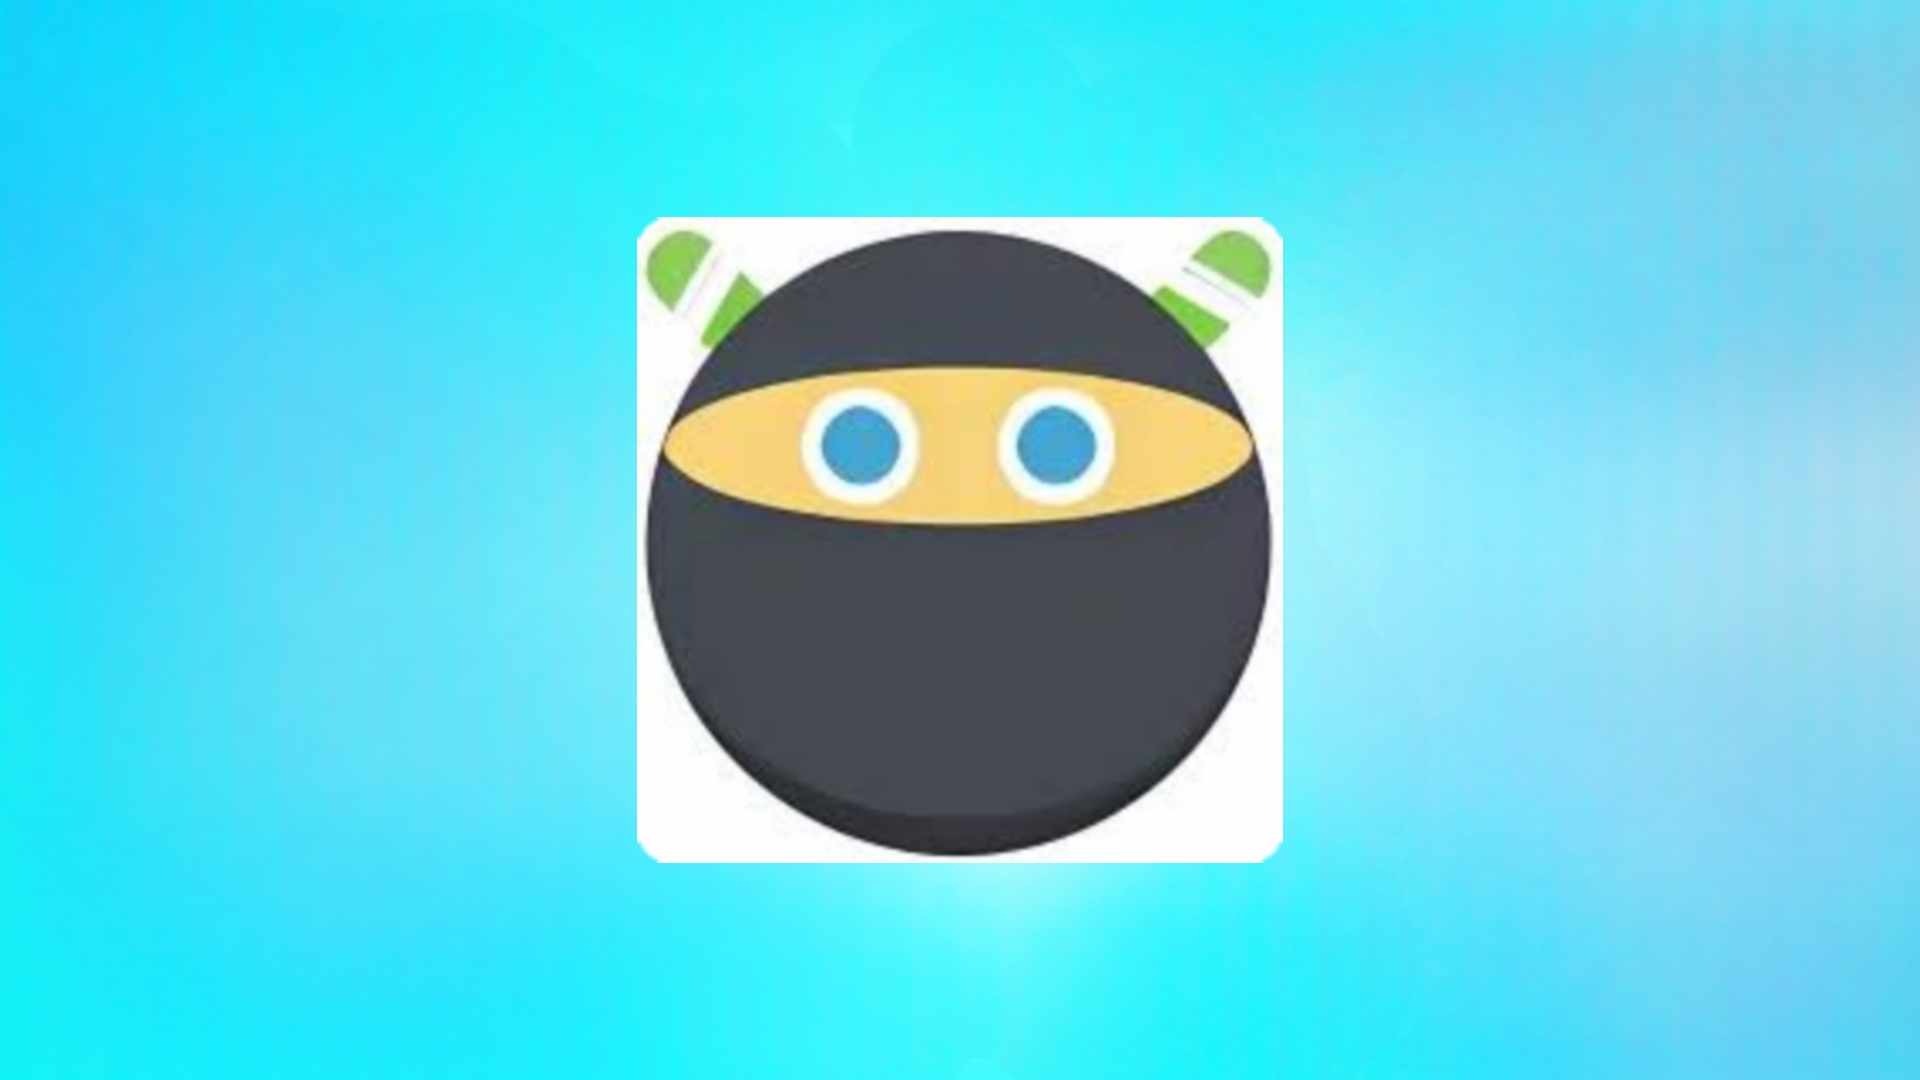 הורד את Ninja Download Manager 2024 בחינם למחשב מ- Mediafire